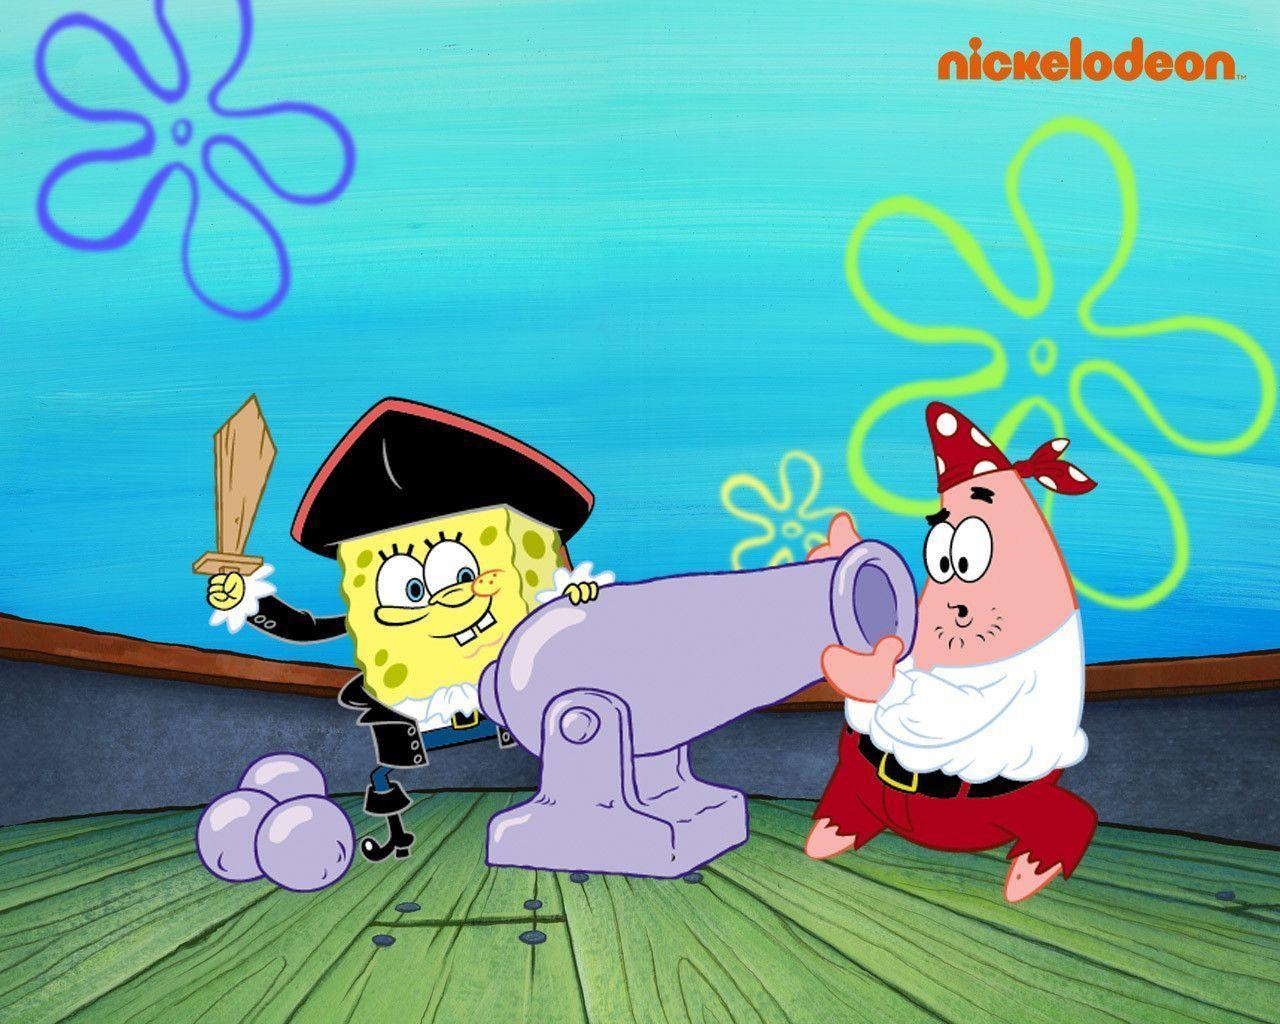 Spongebob & Patrick Squarepants Wallpaper 31281732